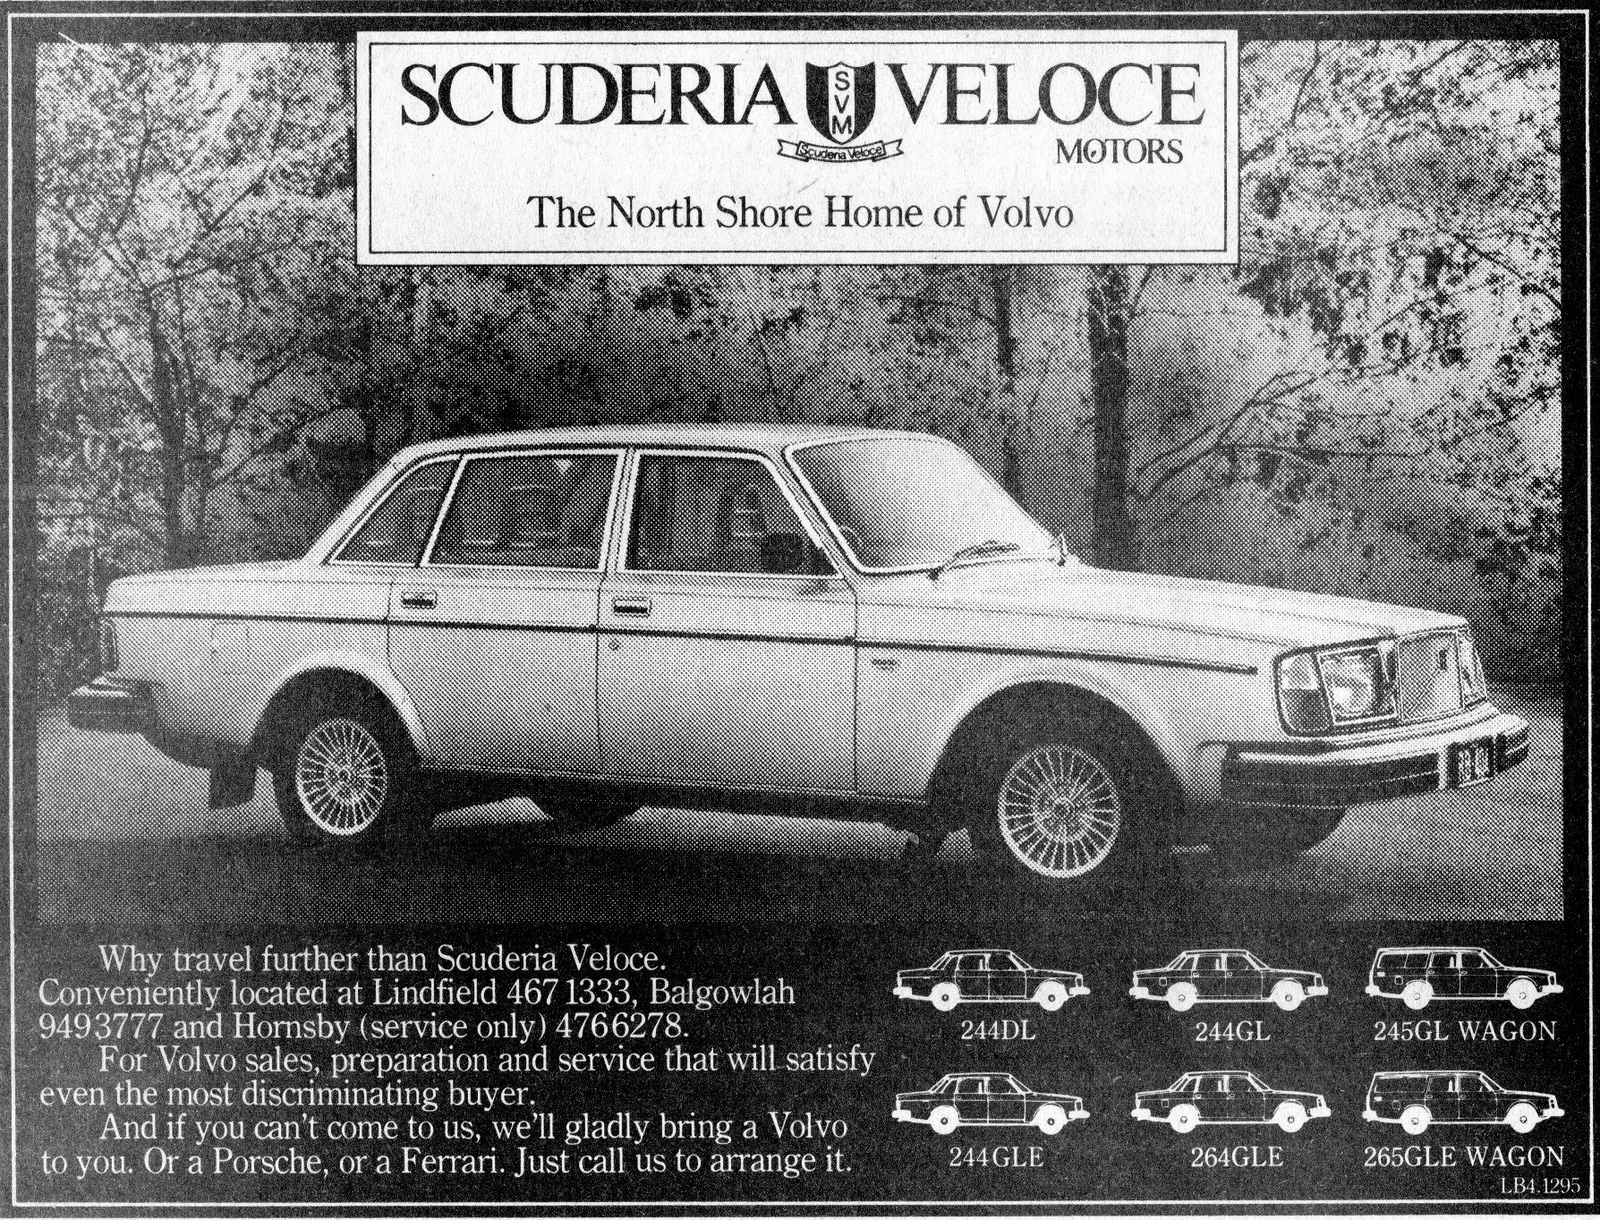 1979 Scuderia Veloce Motors Volvo 244DL & 244GL Sedan